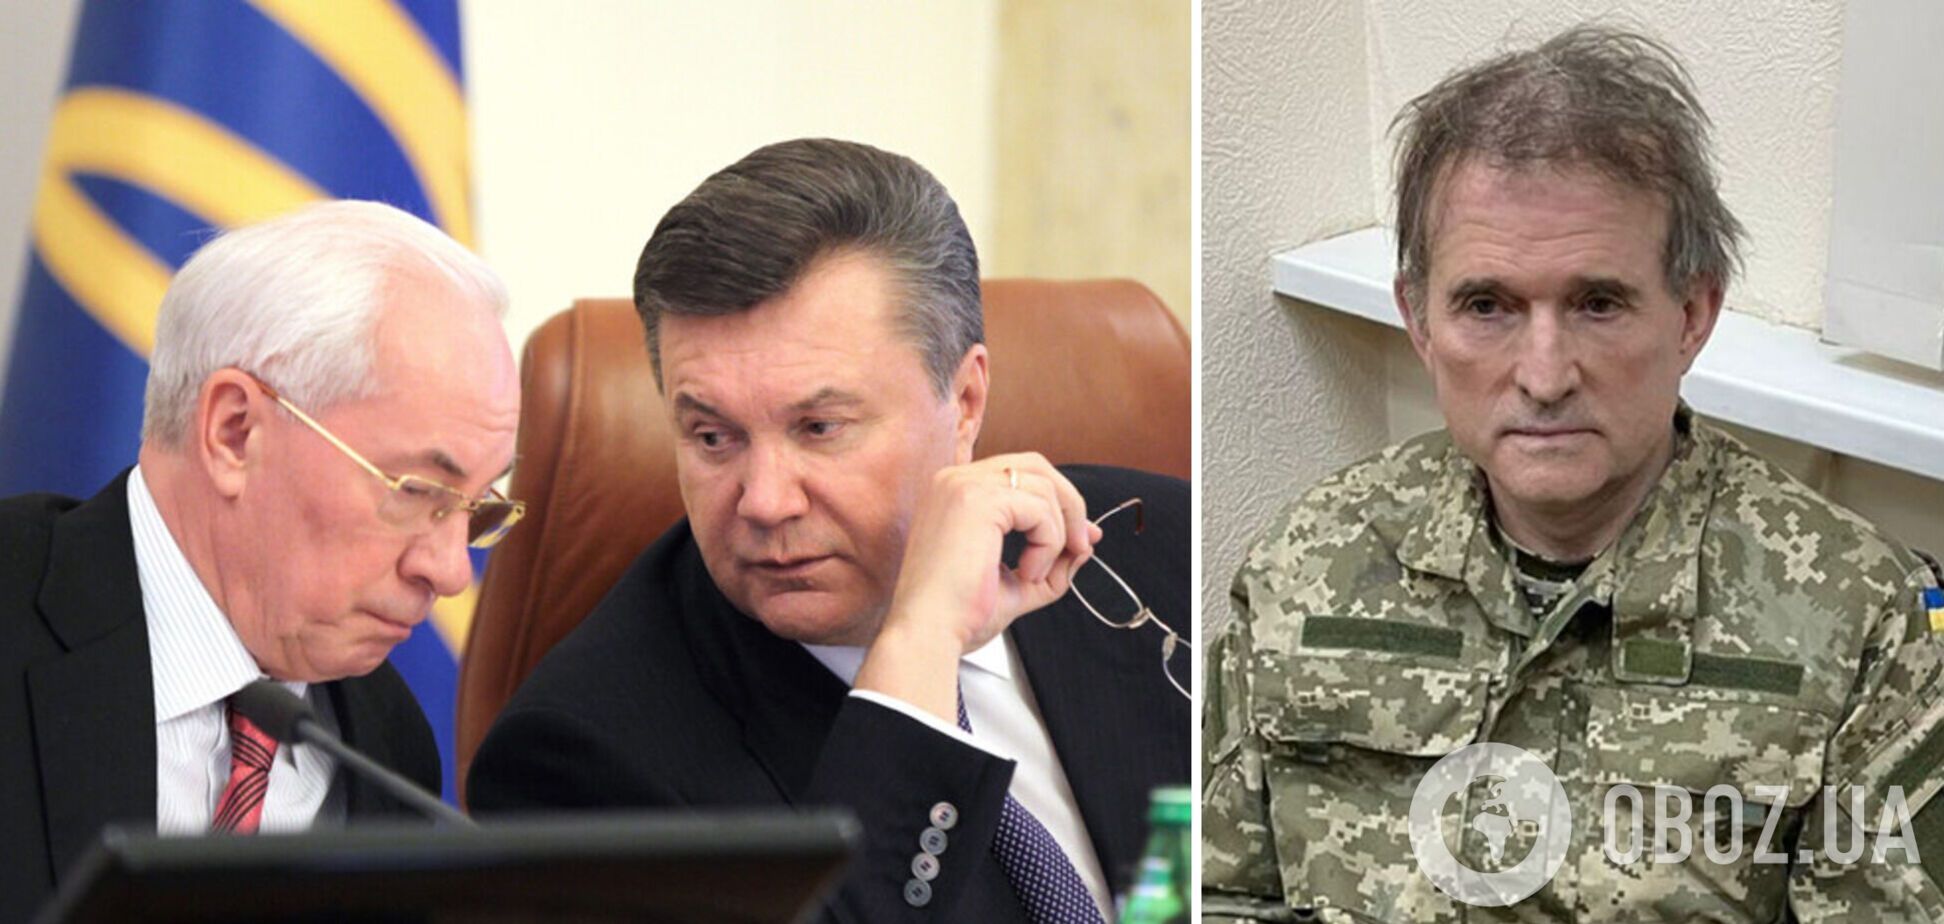 Зачем Кремлю квазиправительство Украины во главе с Медведчуком, Януковичем и Азаровым?